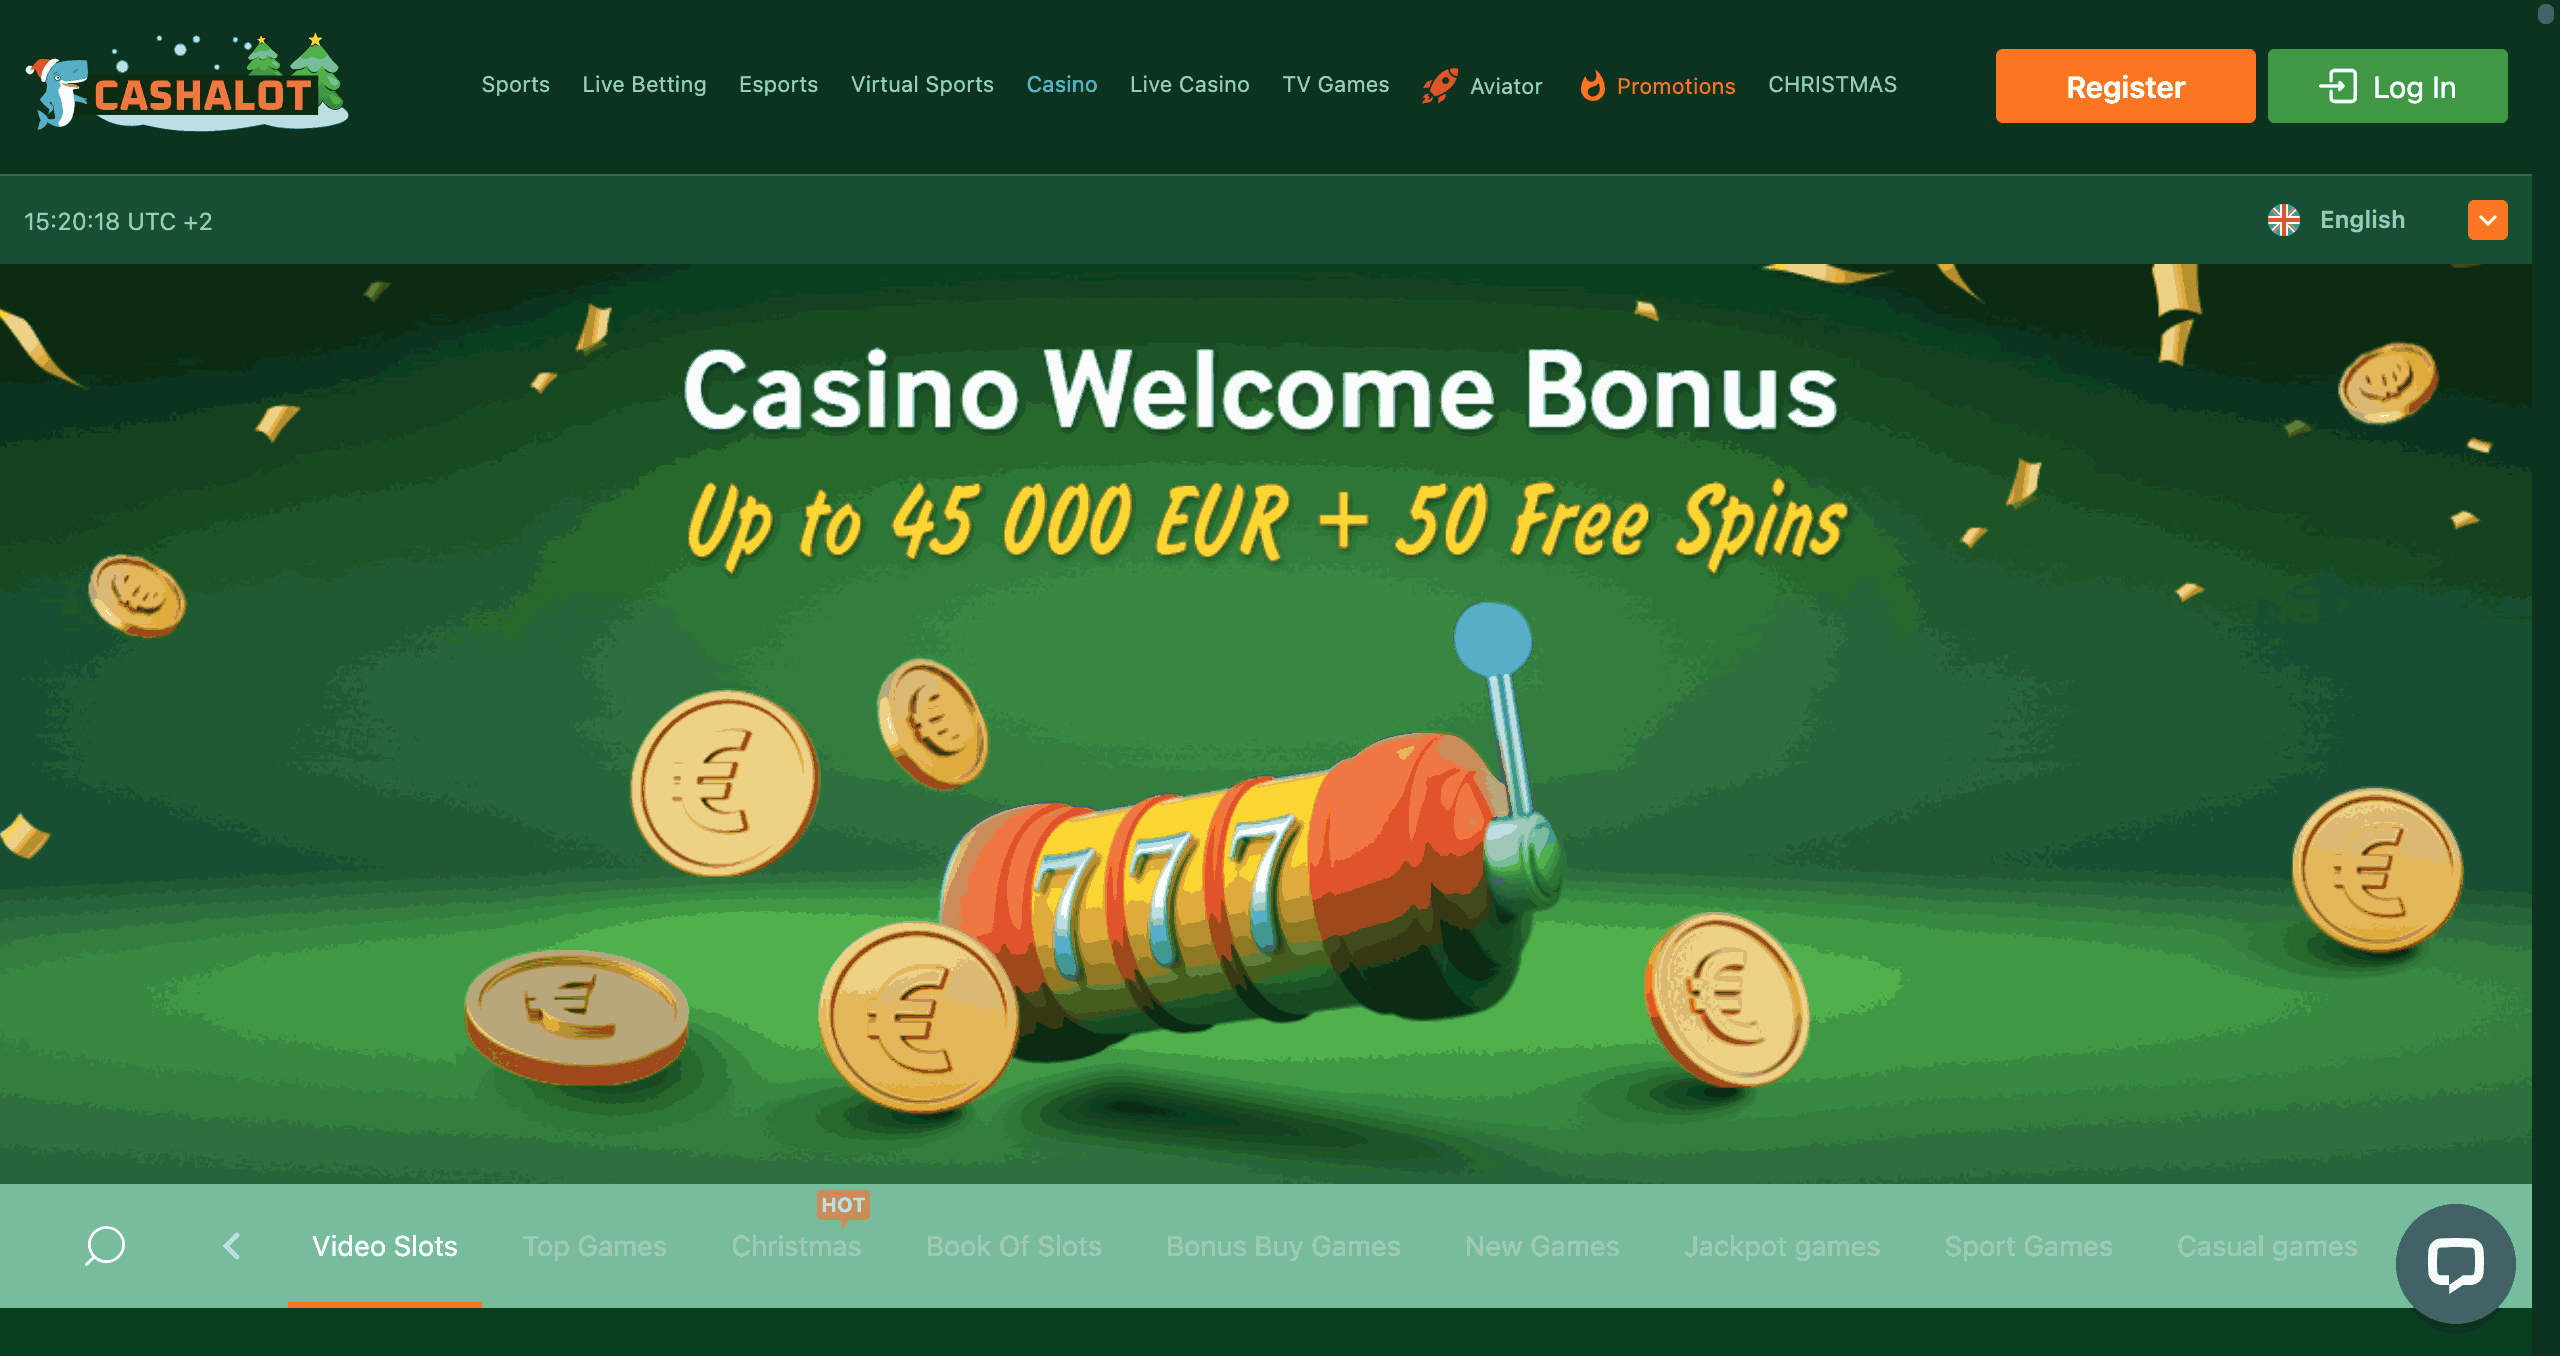 Cashalot Casino image